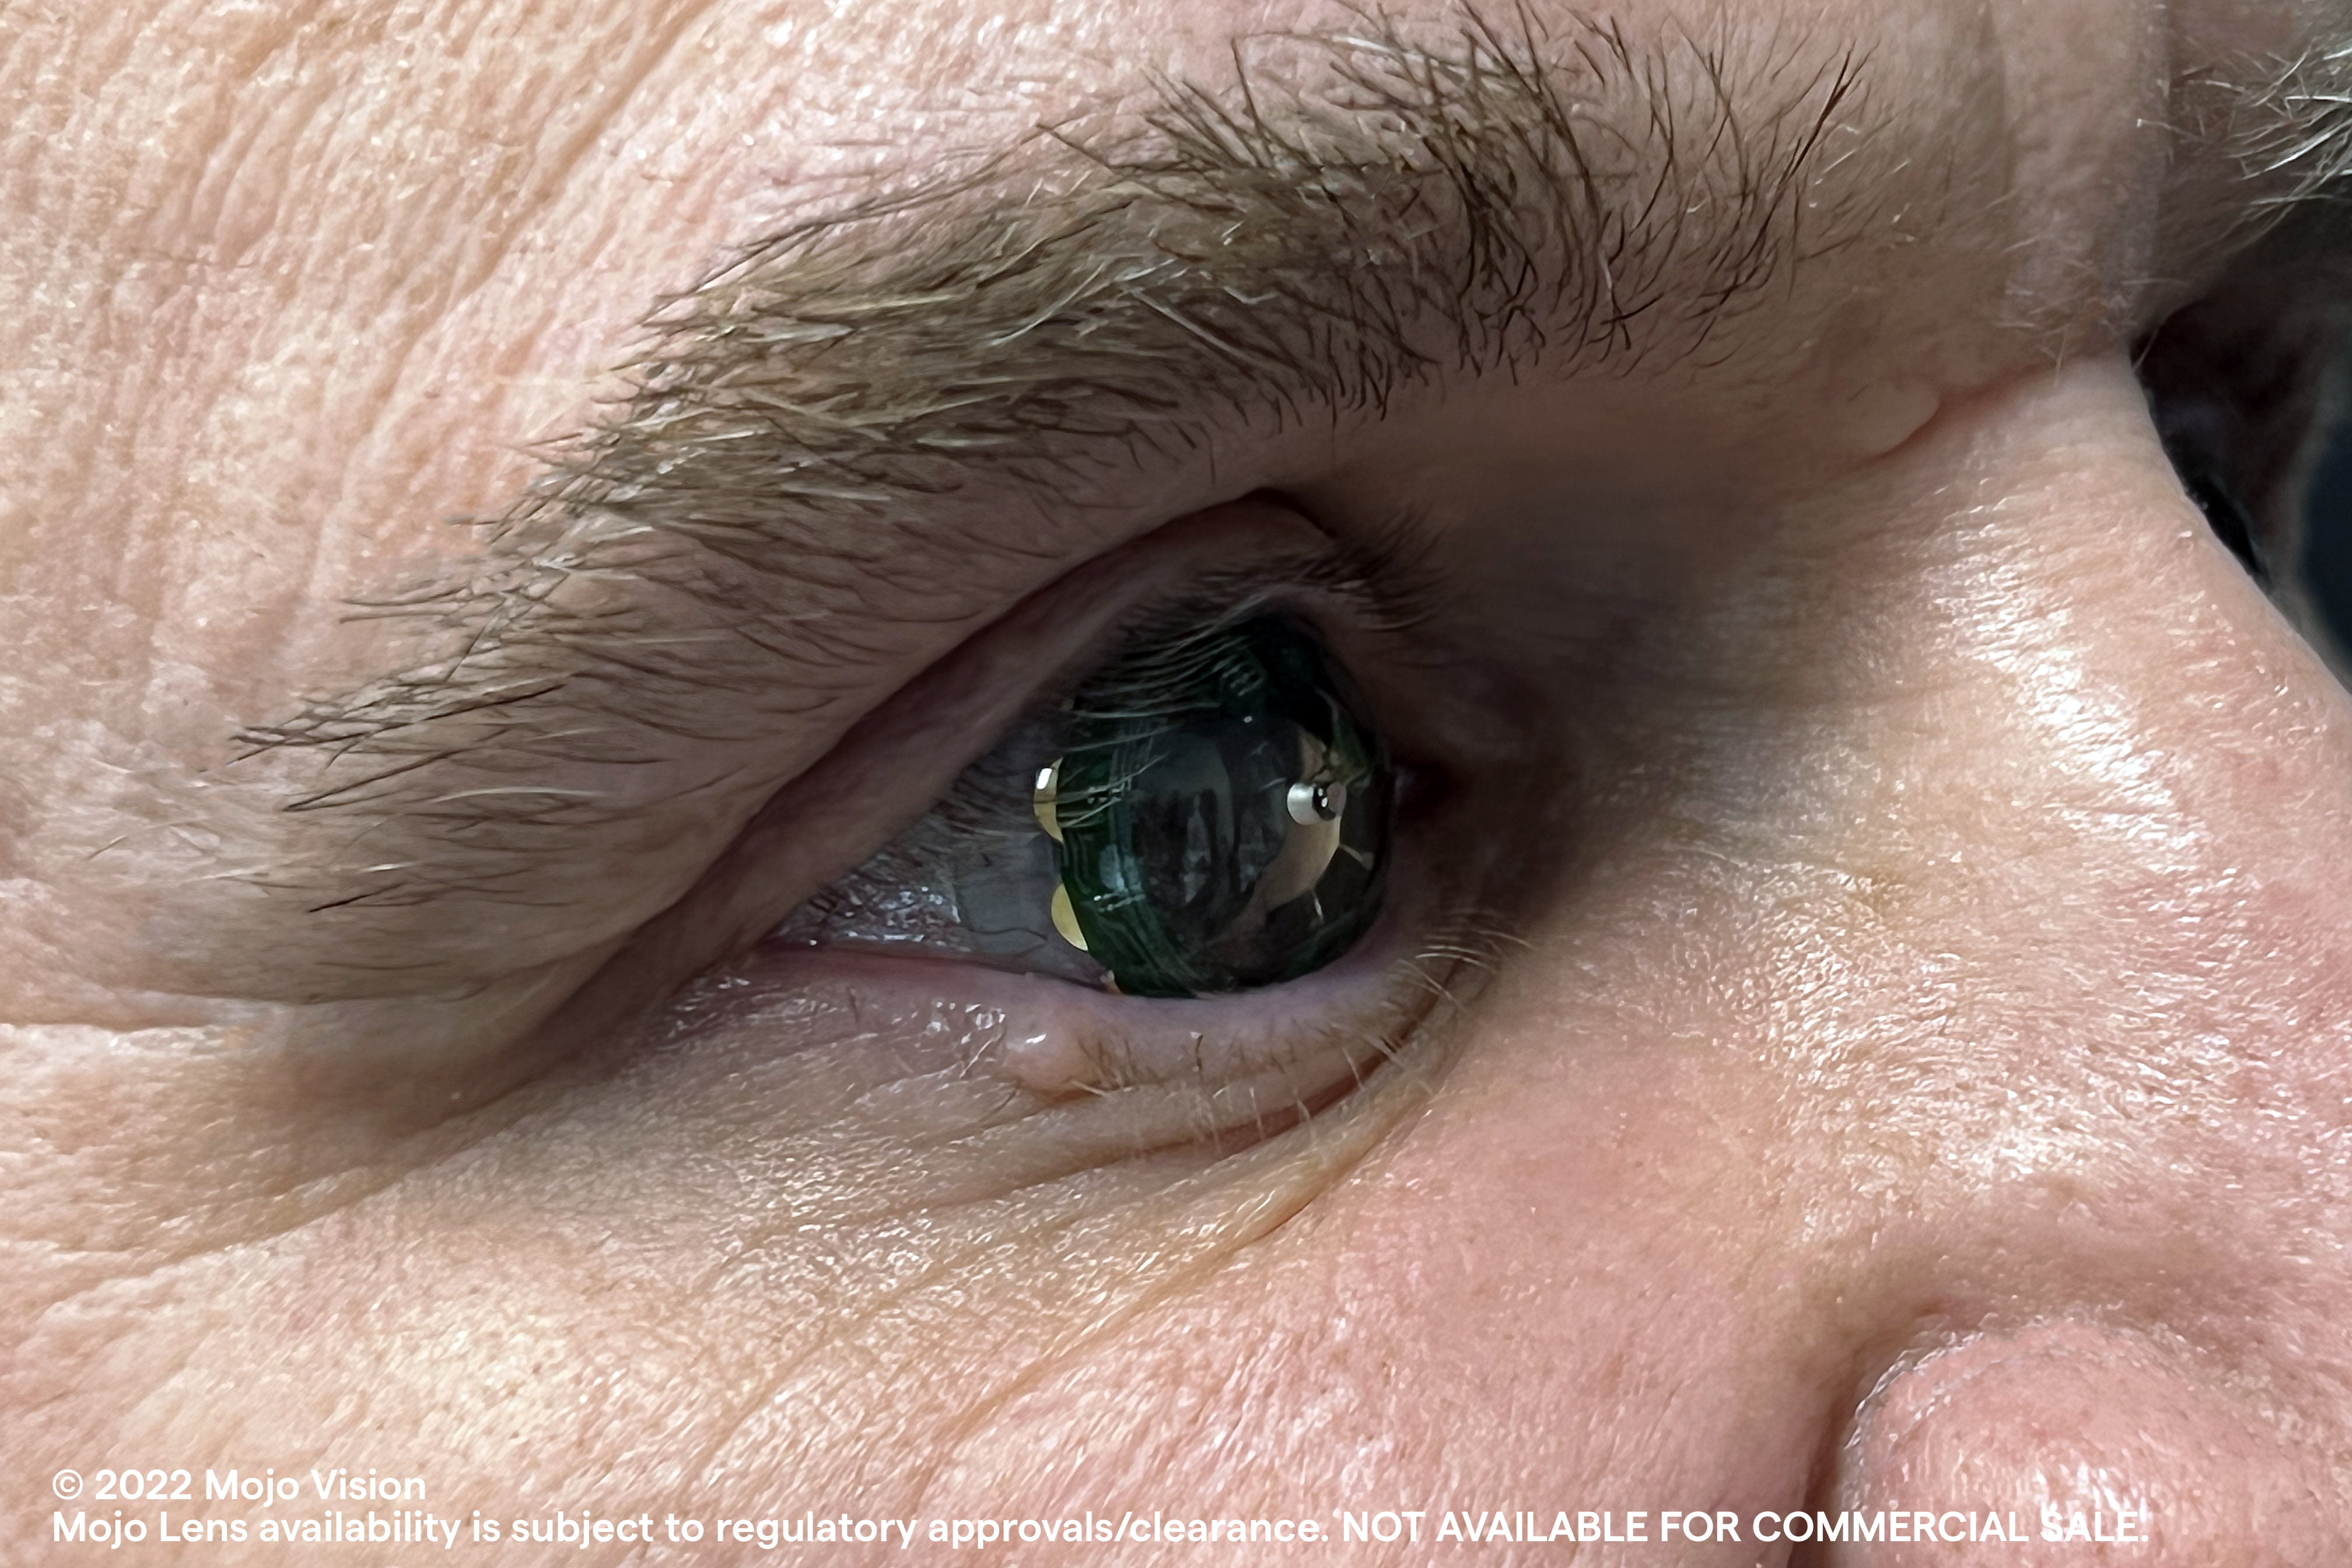 AR-Kontaktlinsen von Mojo Vision auf Eis gelegt - Fokus auf MicroLED